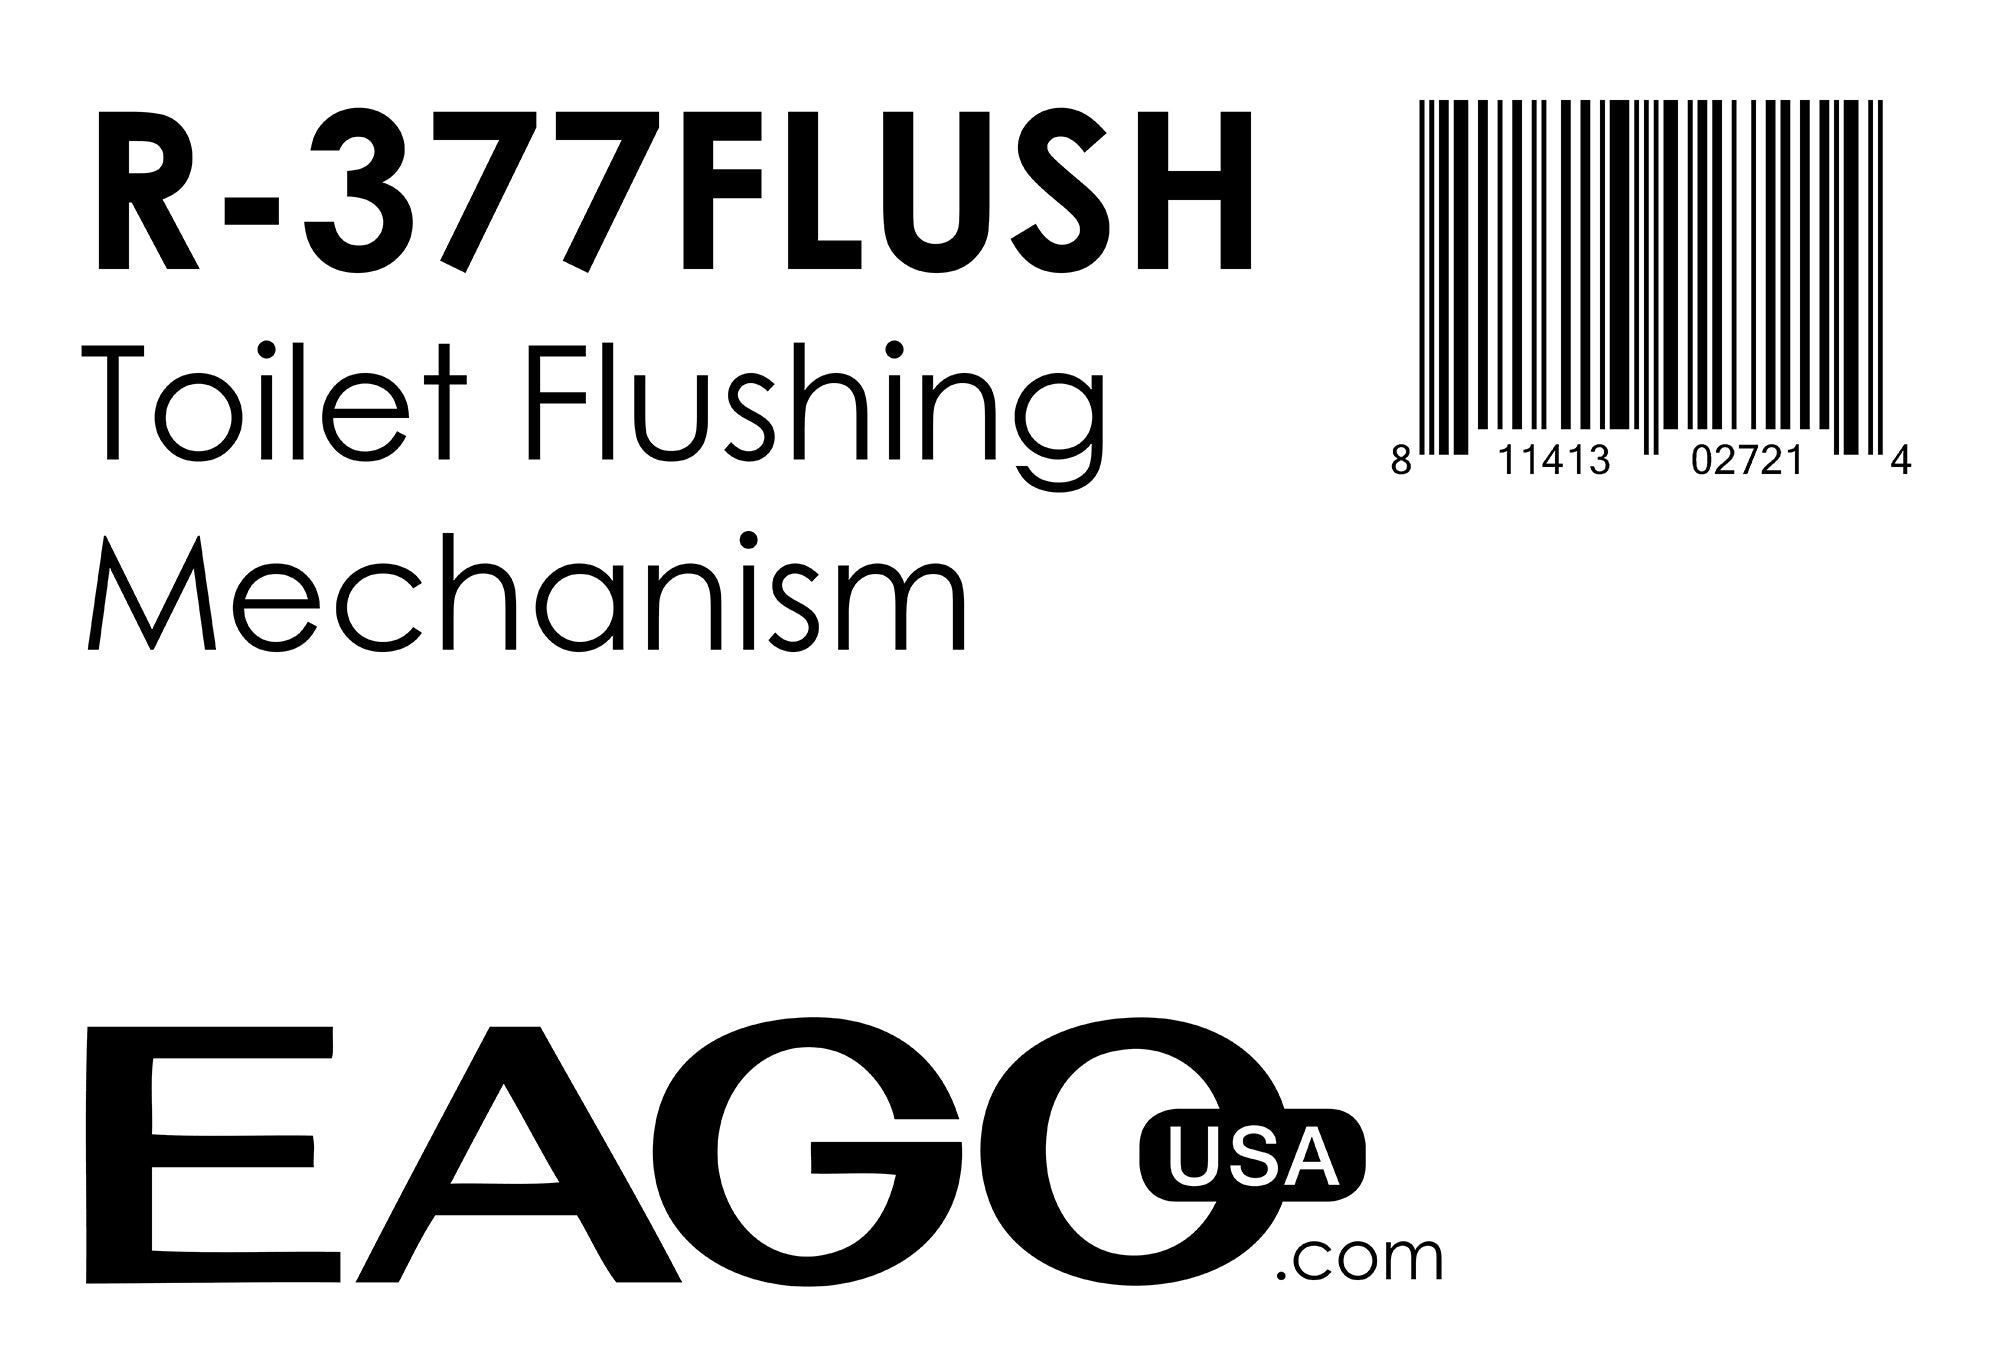 EAGO - Replacement Toilet Flushing Mechanism for TB377 | R-377FLUSH